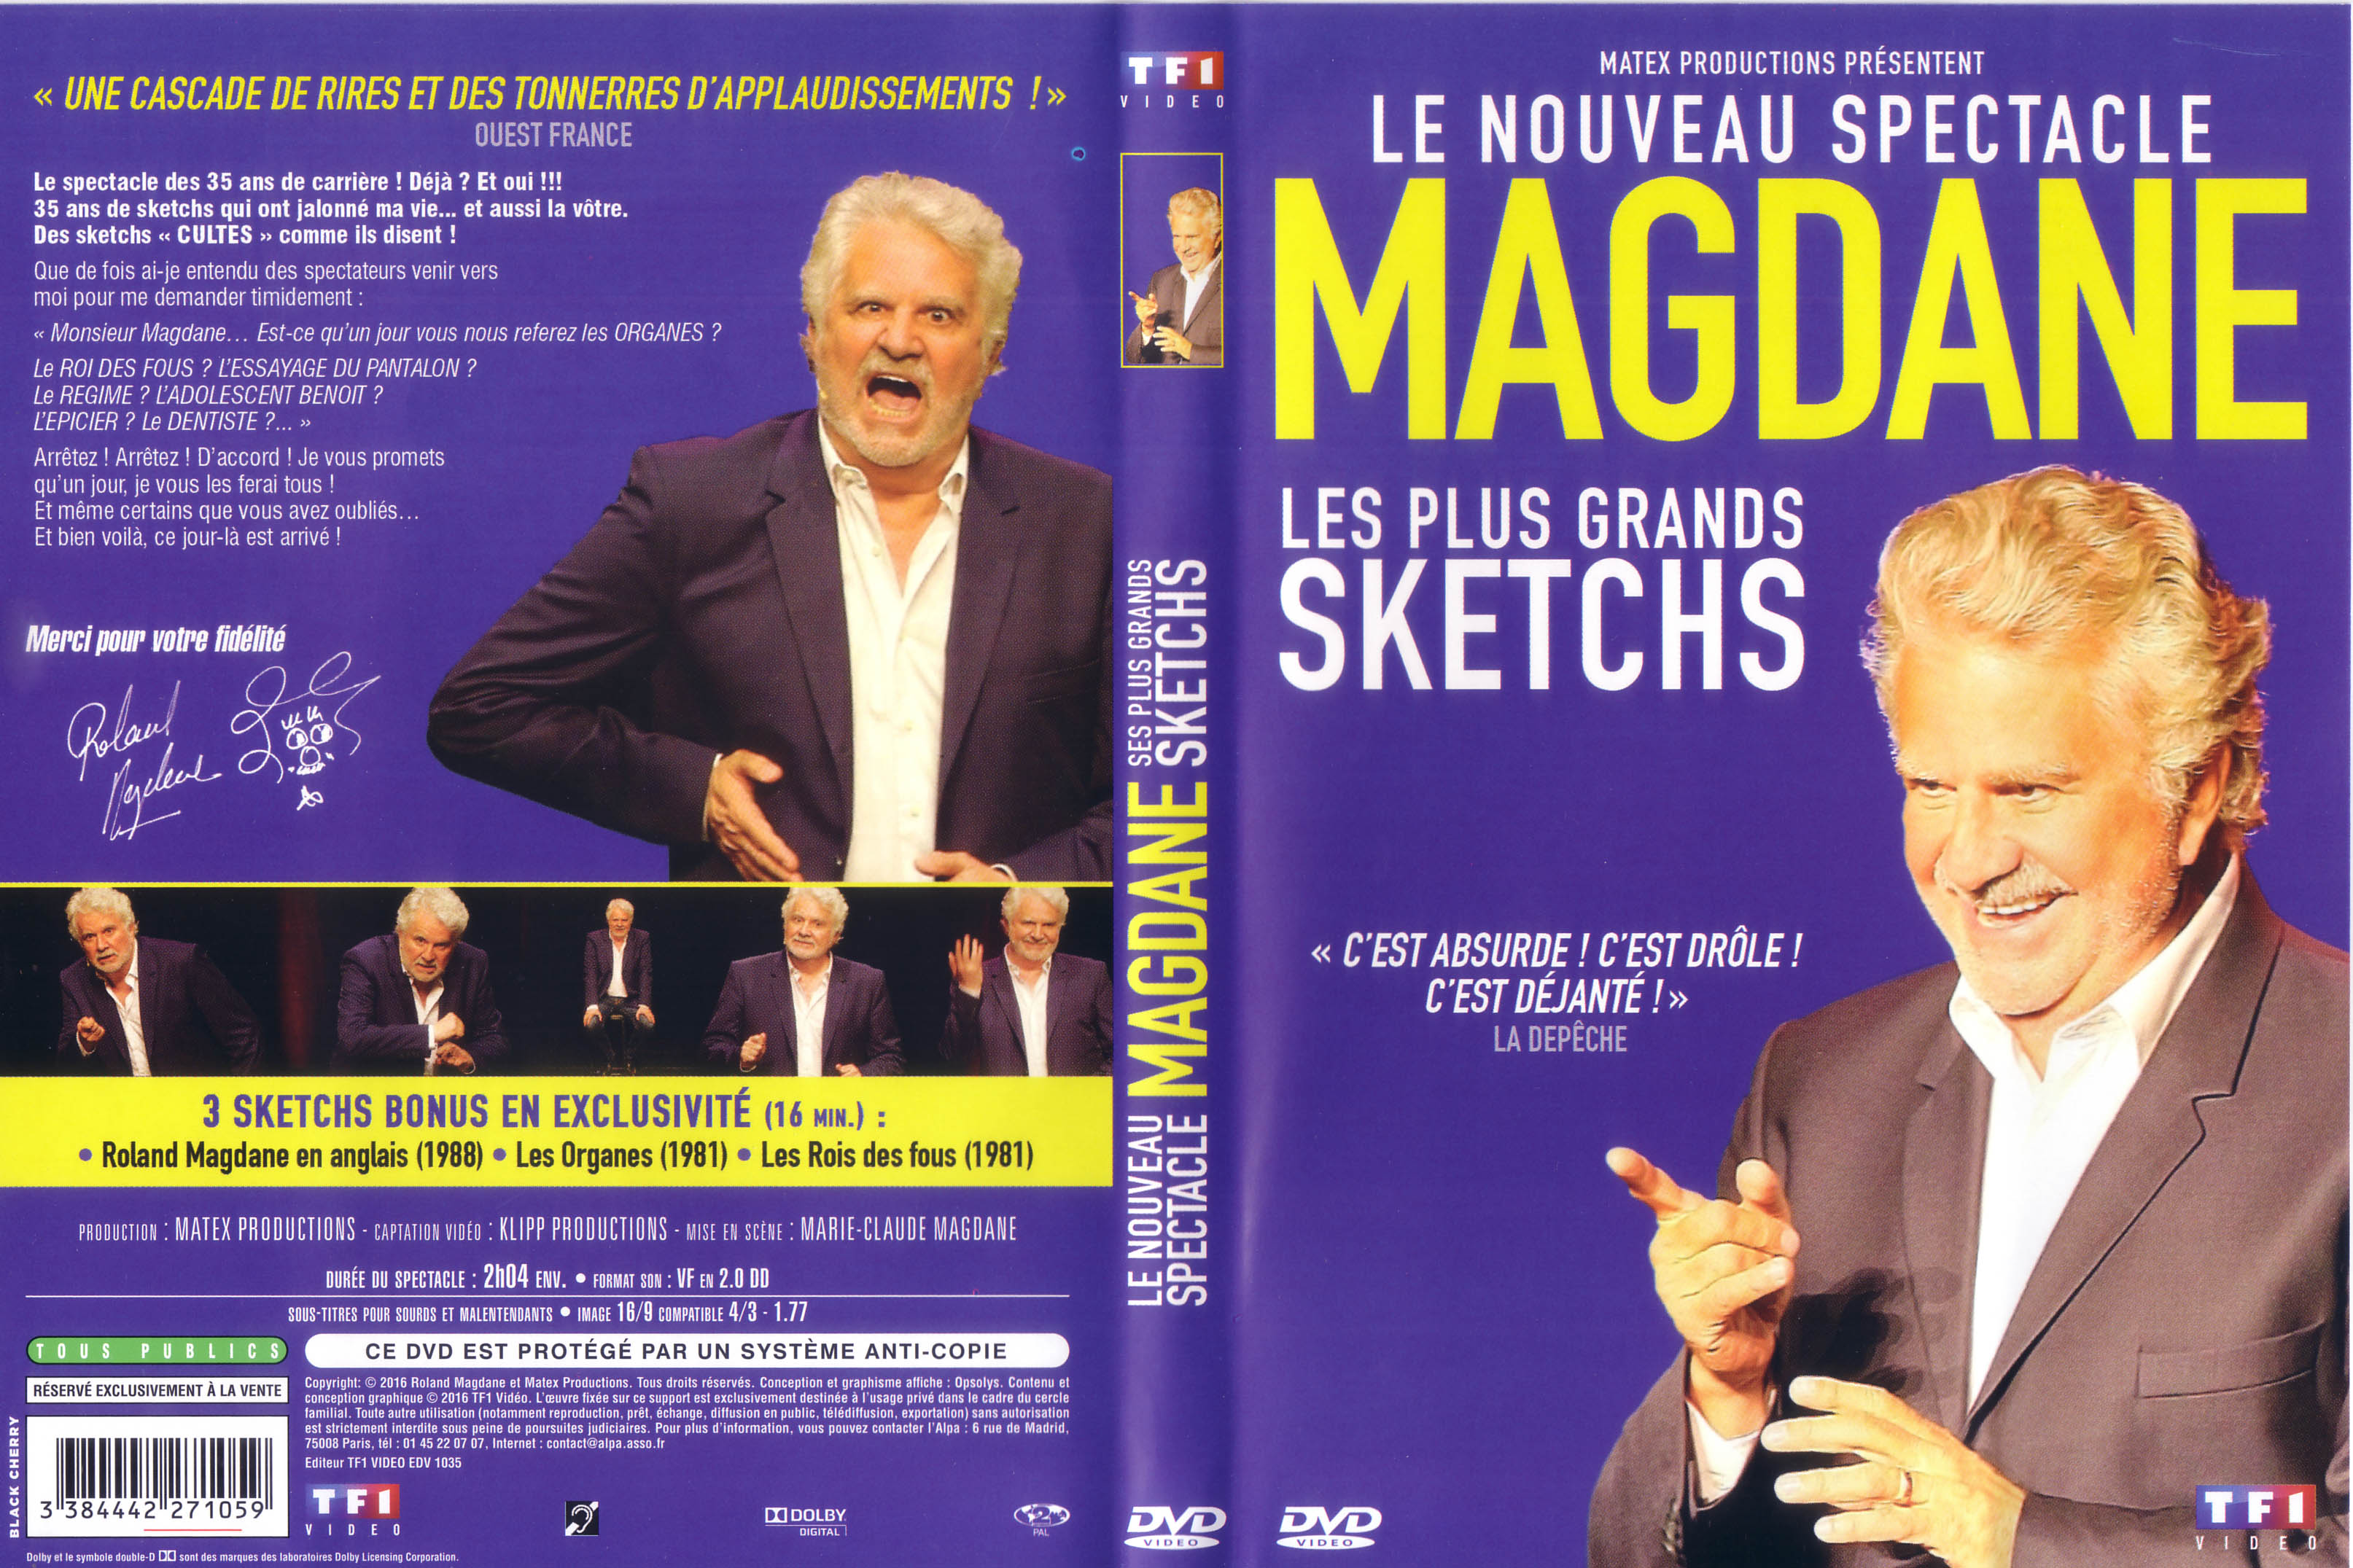 Jaquette DVD Roland Madgane - Les plus grands sketchs